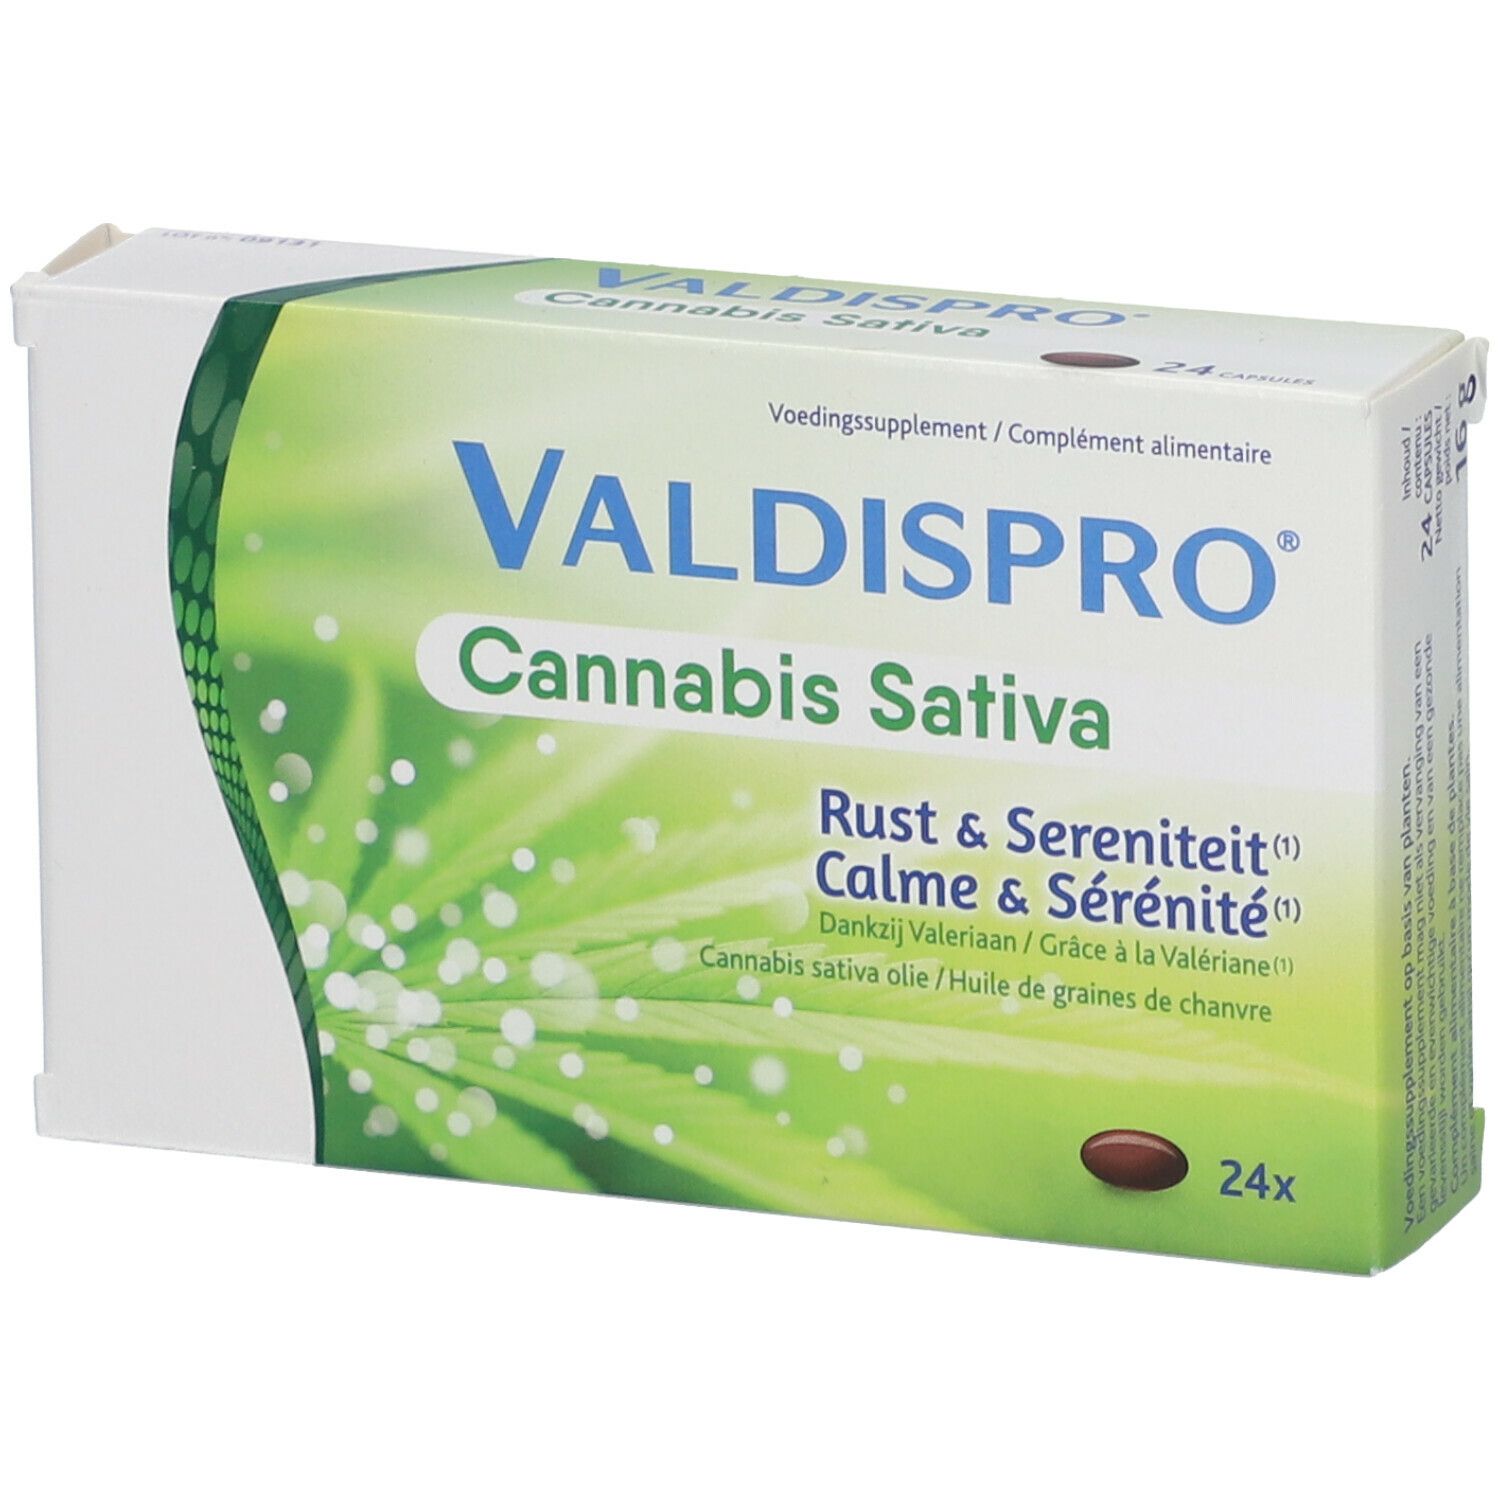 Valdispro® Cannabis Sativa